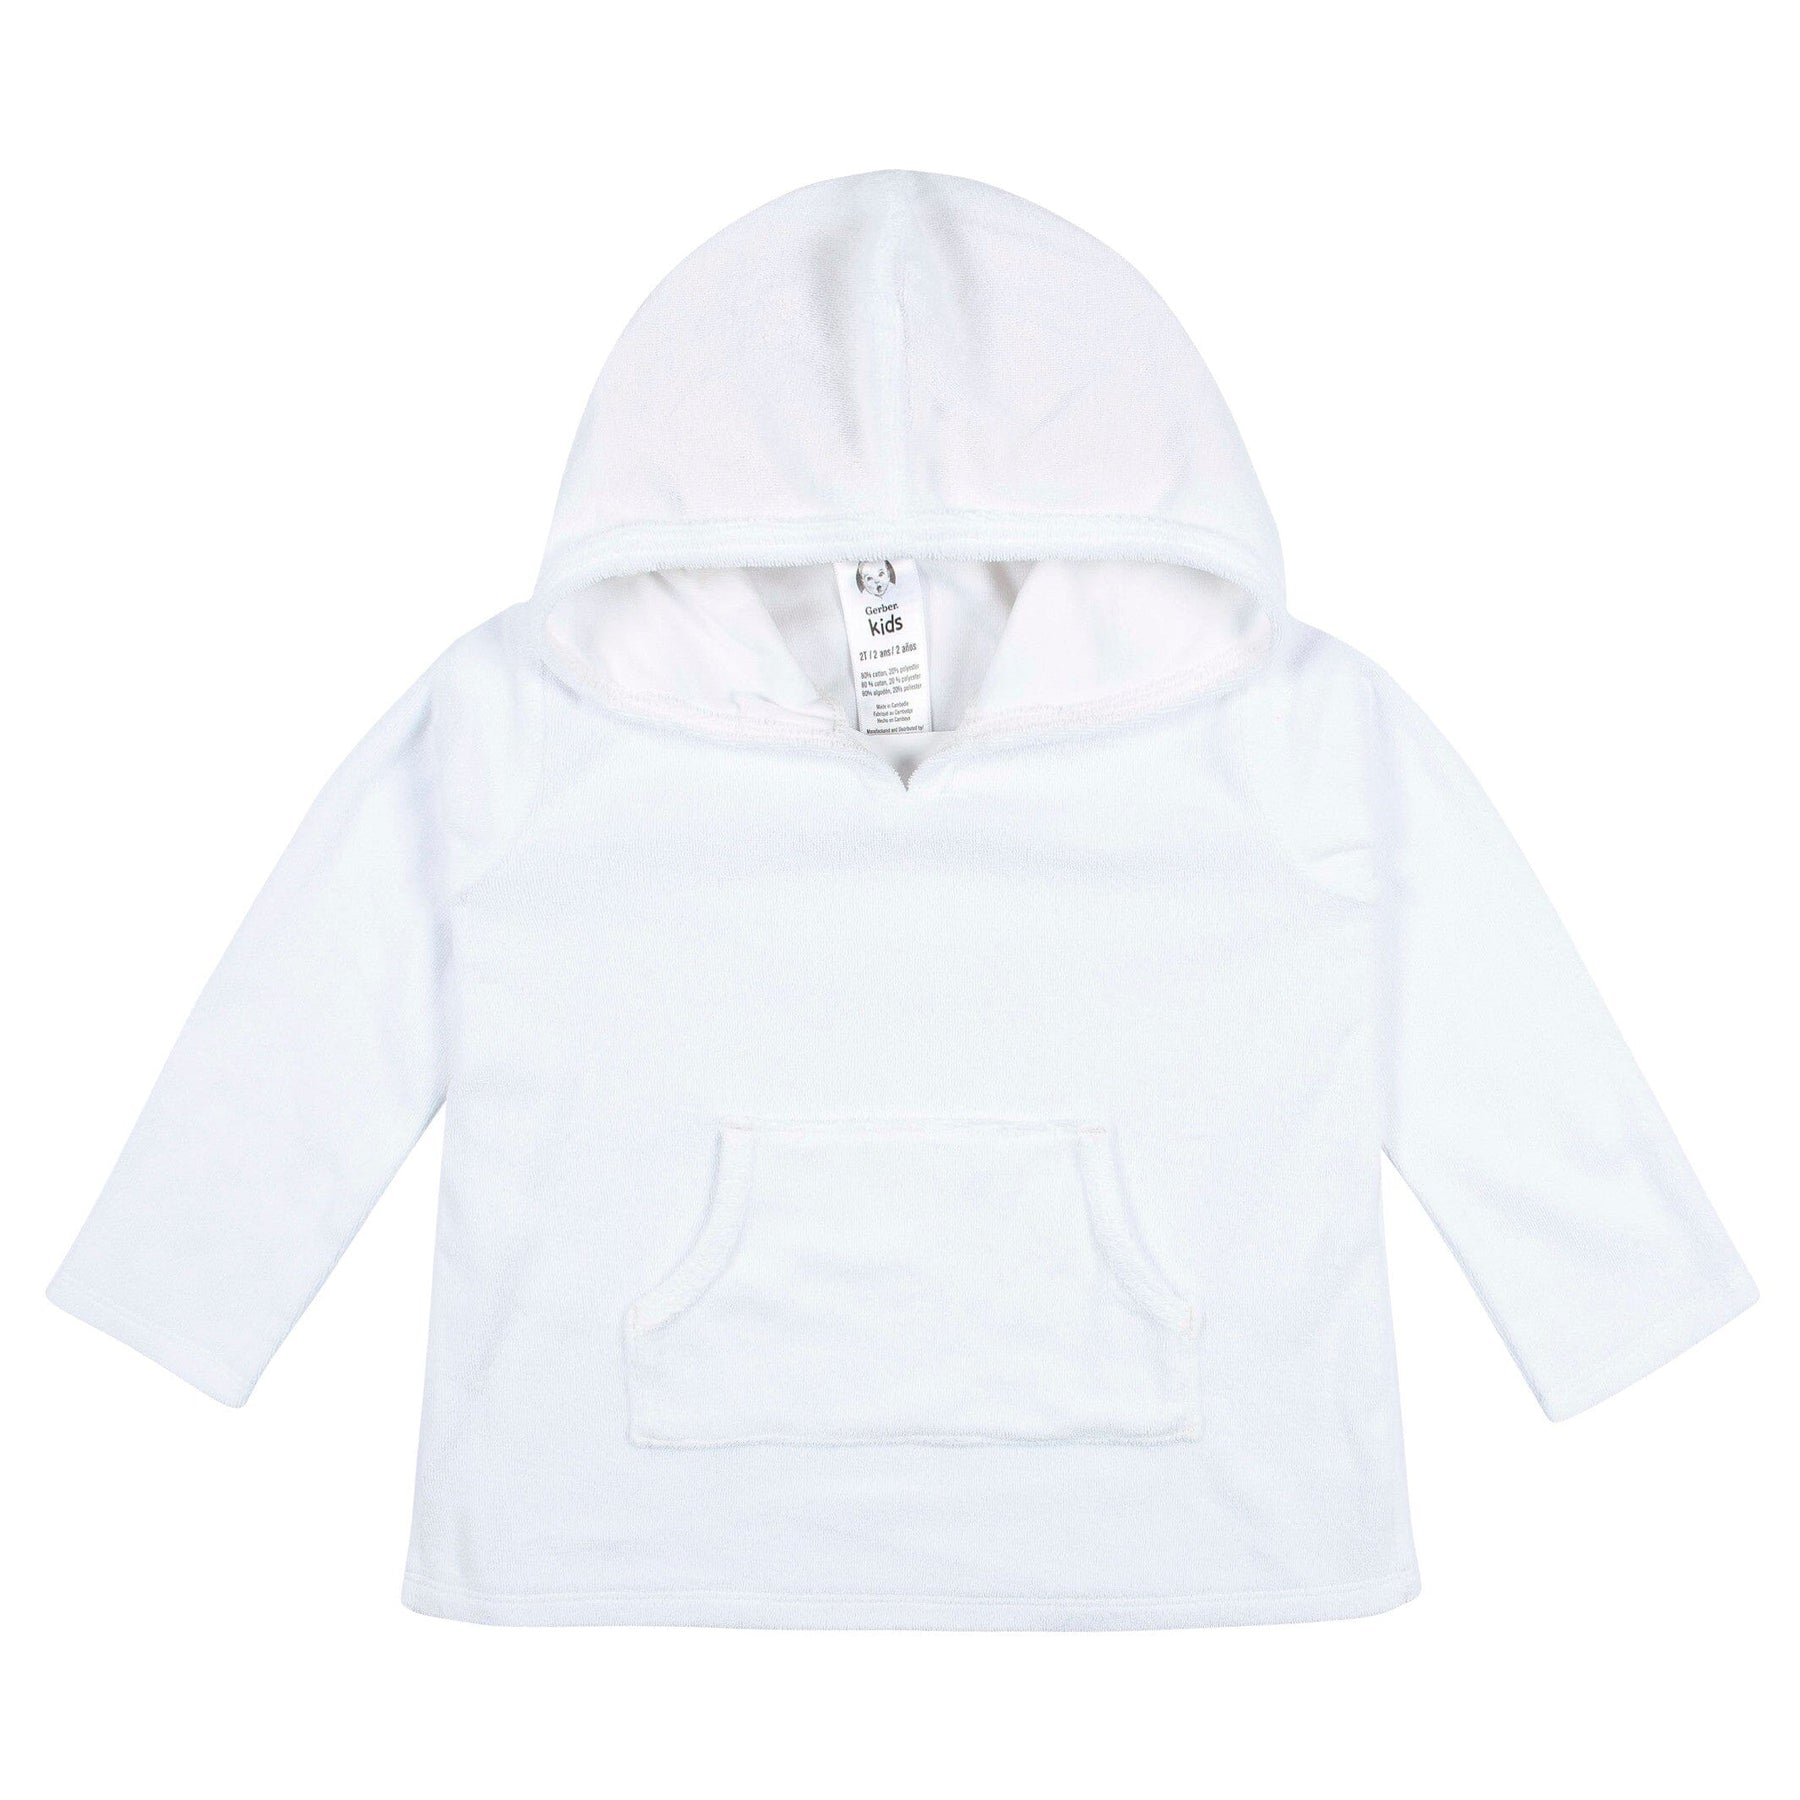 Verkaufsgeschäft Baby & Toddler Girls White Gerber Terry Hooded Coverup – Pocket Childrenswear Kangaroo